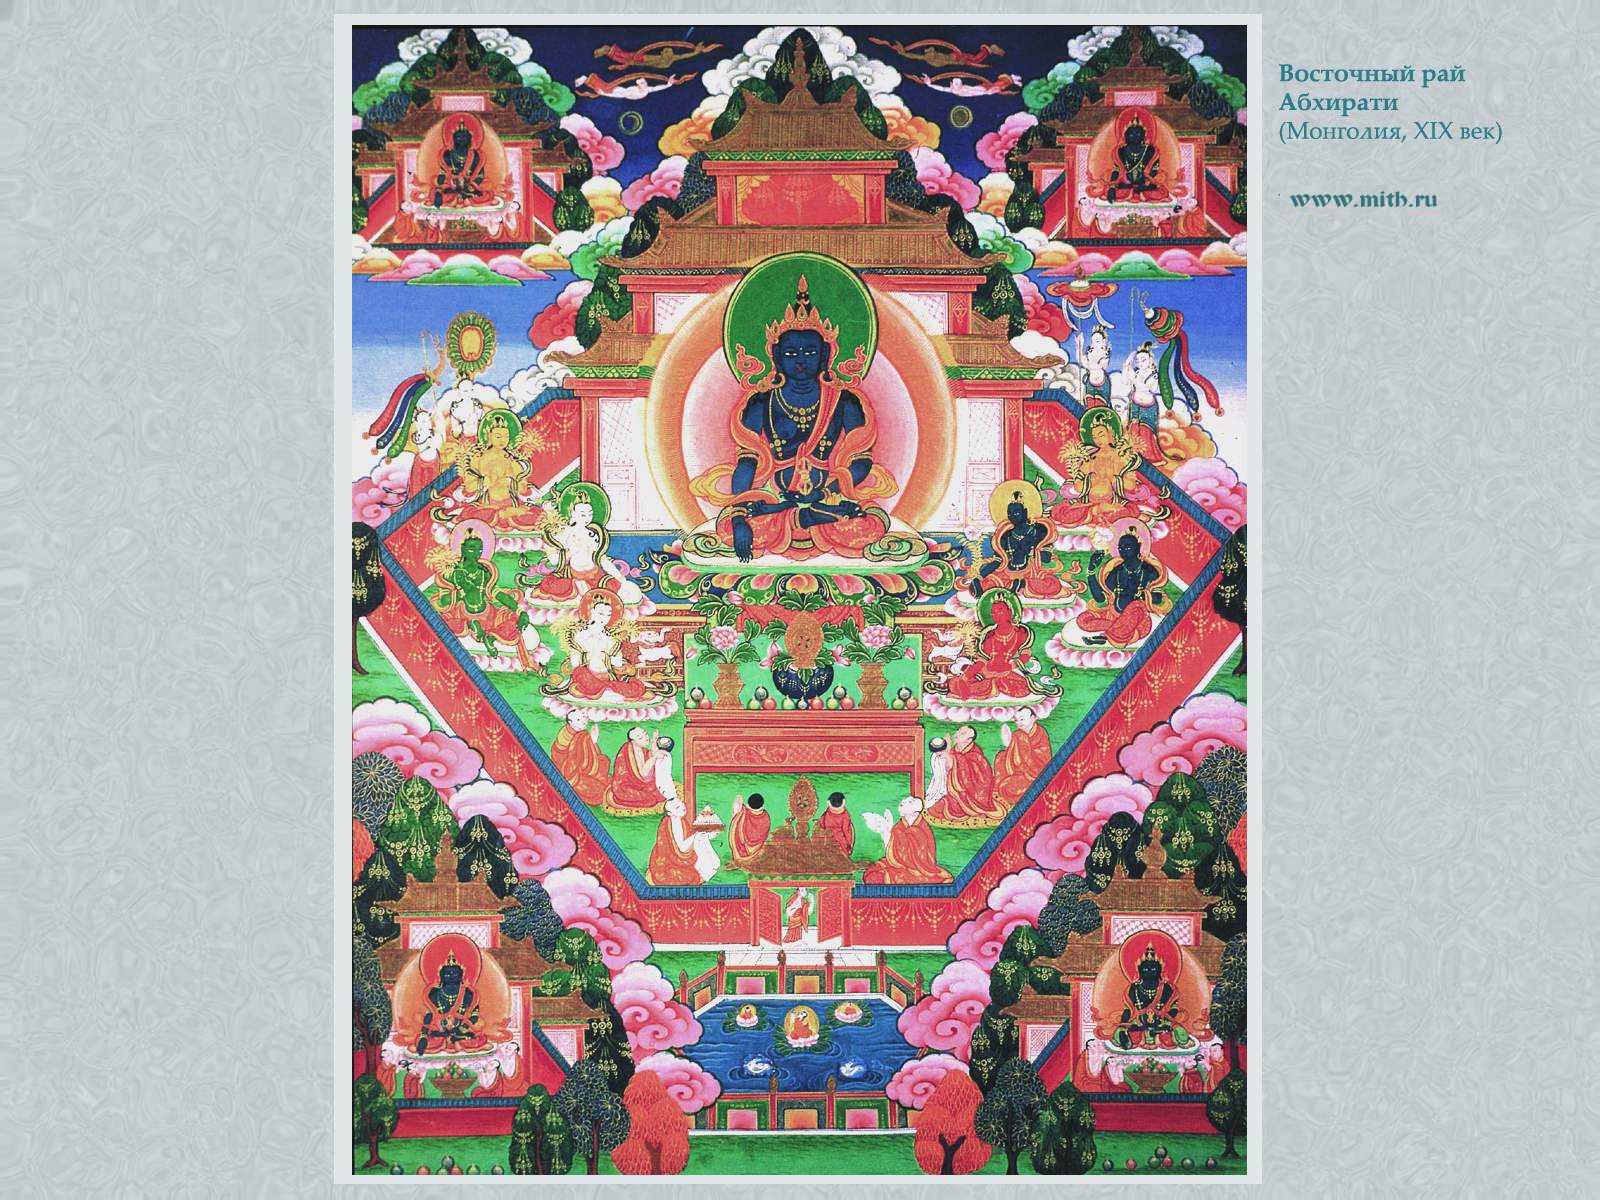 Акшобхья
в восточном раю Абхирати

перейти к книге 'Тибетская живопись'